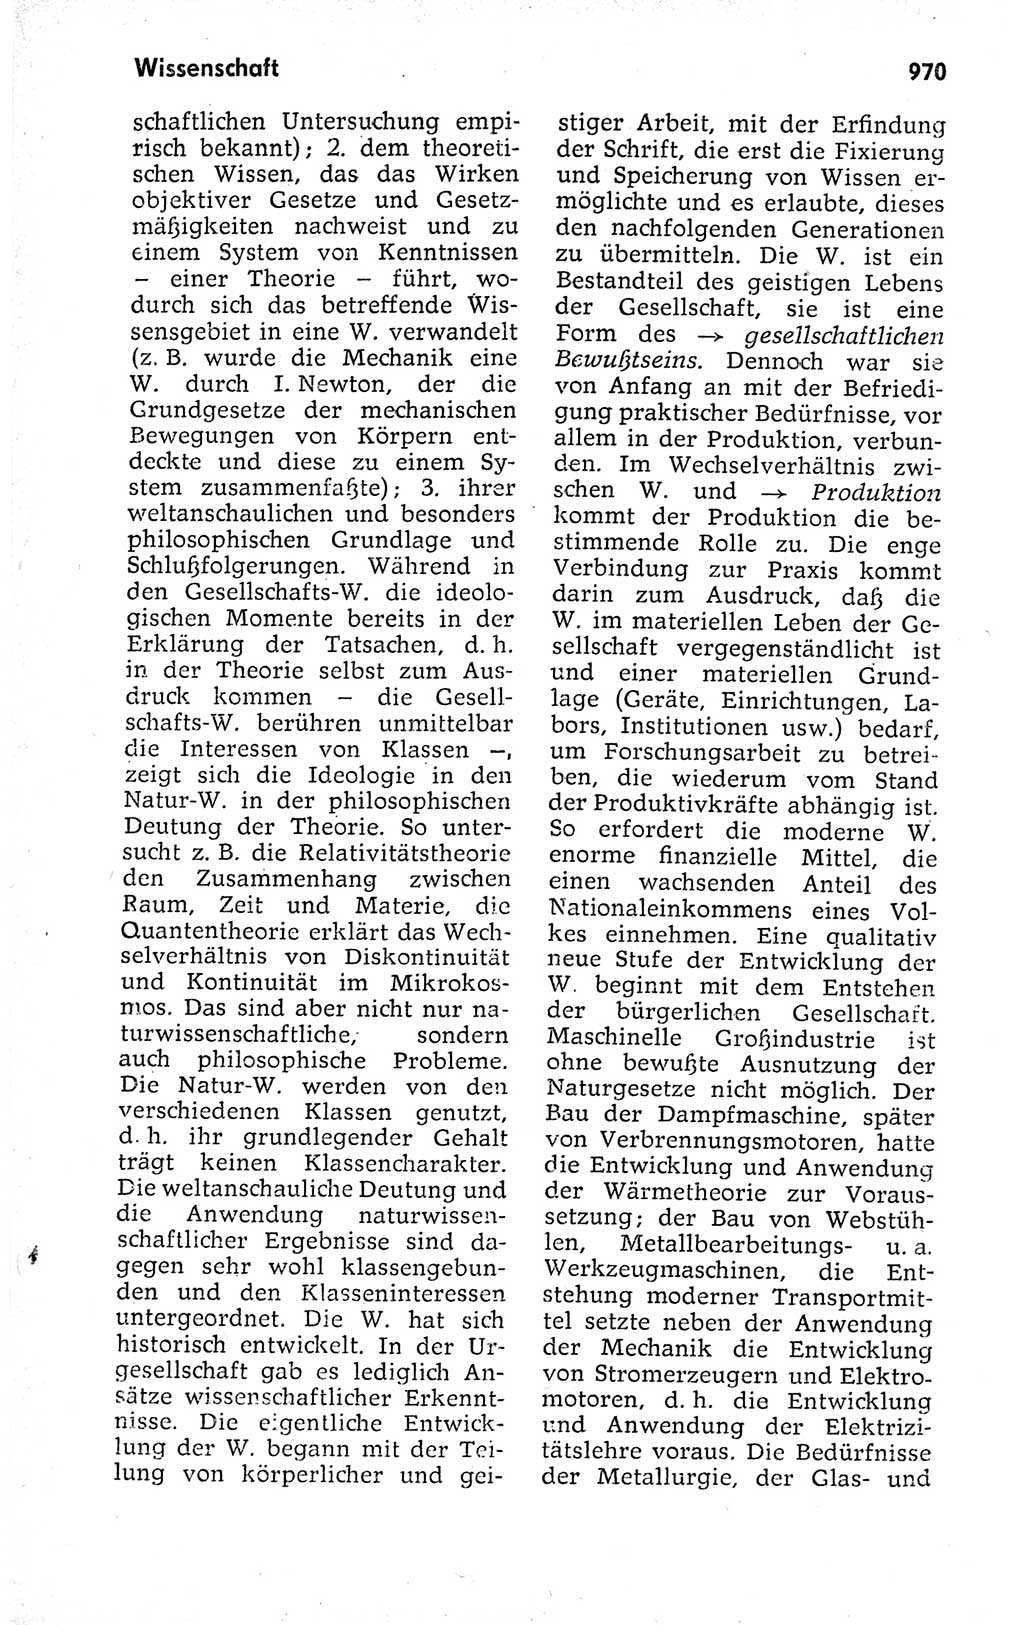 Kleines politisches Wörterbuch [Deutsche Demokratische Republik (DDR)] 1973, Seite 970 (Kl. pol. Wb. DDR 1973, S. 970)